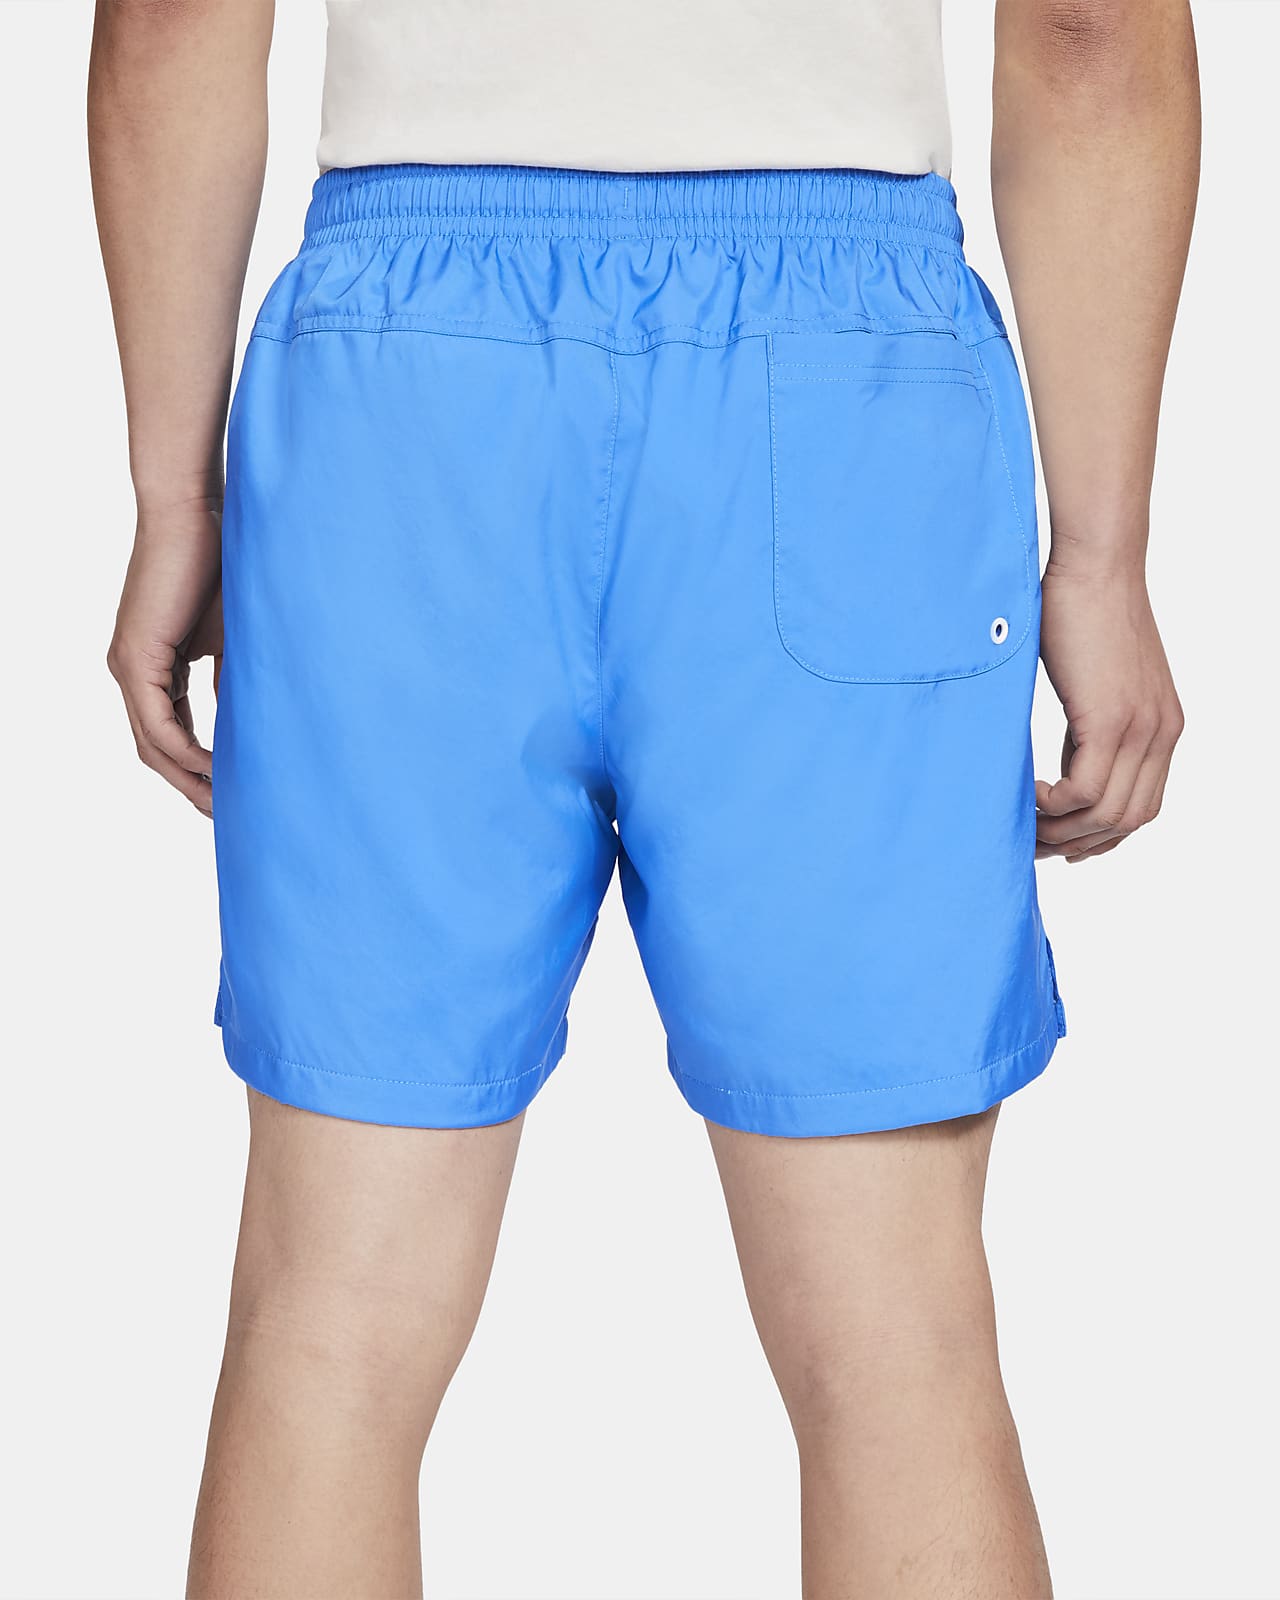 nike woven shorts size chart